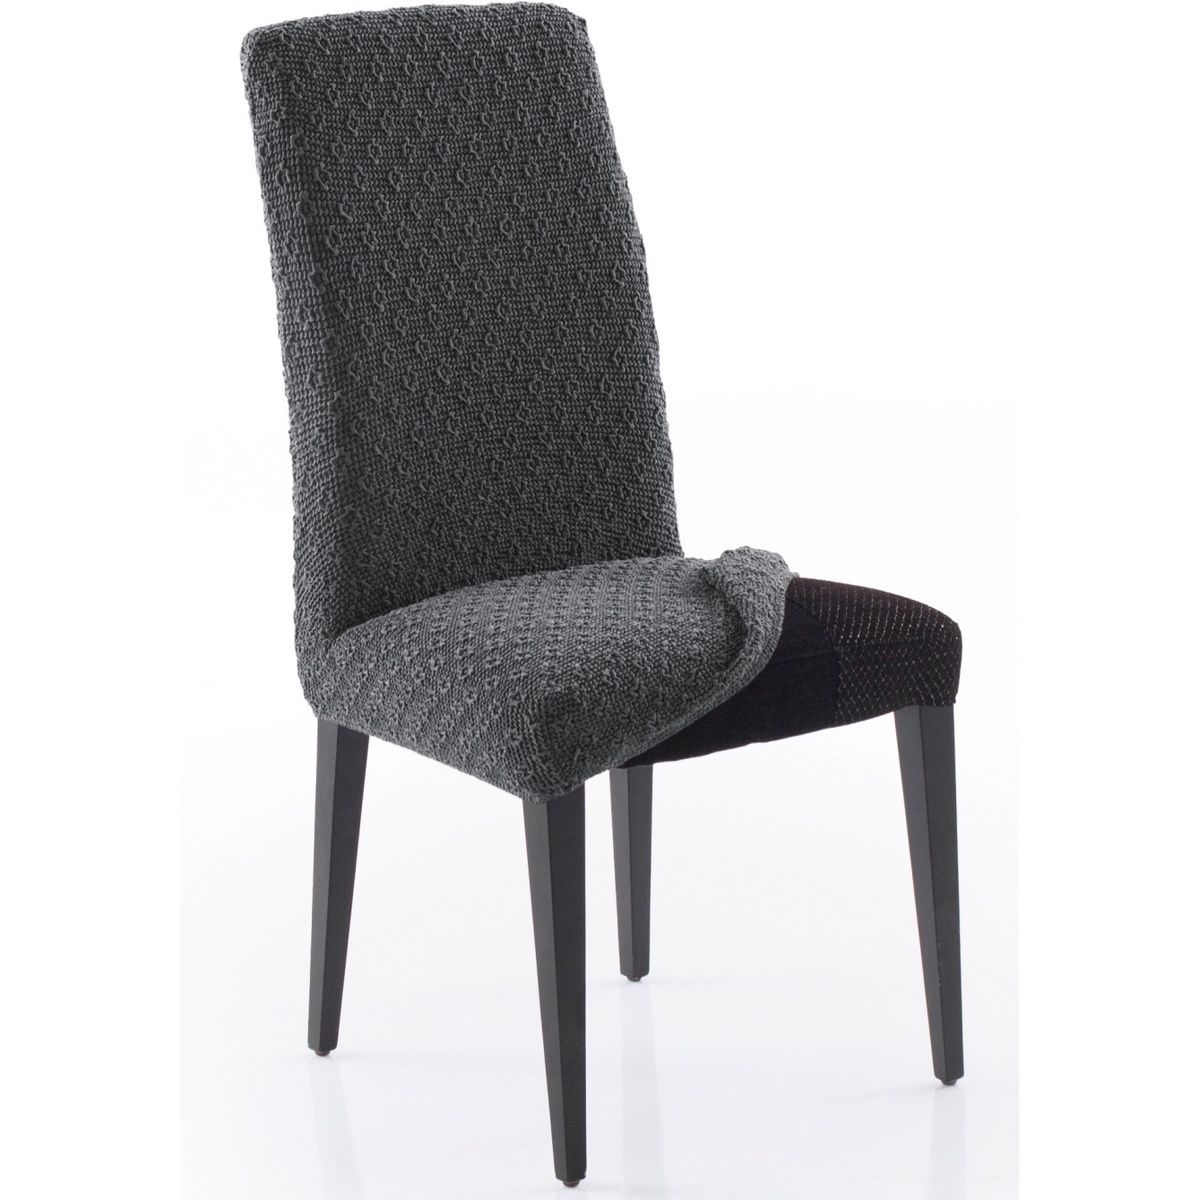 Forbyt Multielastický potah na celou židli Martin tmavě šedá, 60 x 50 x 60 cm, sada 2 ks - 4home.cz